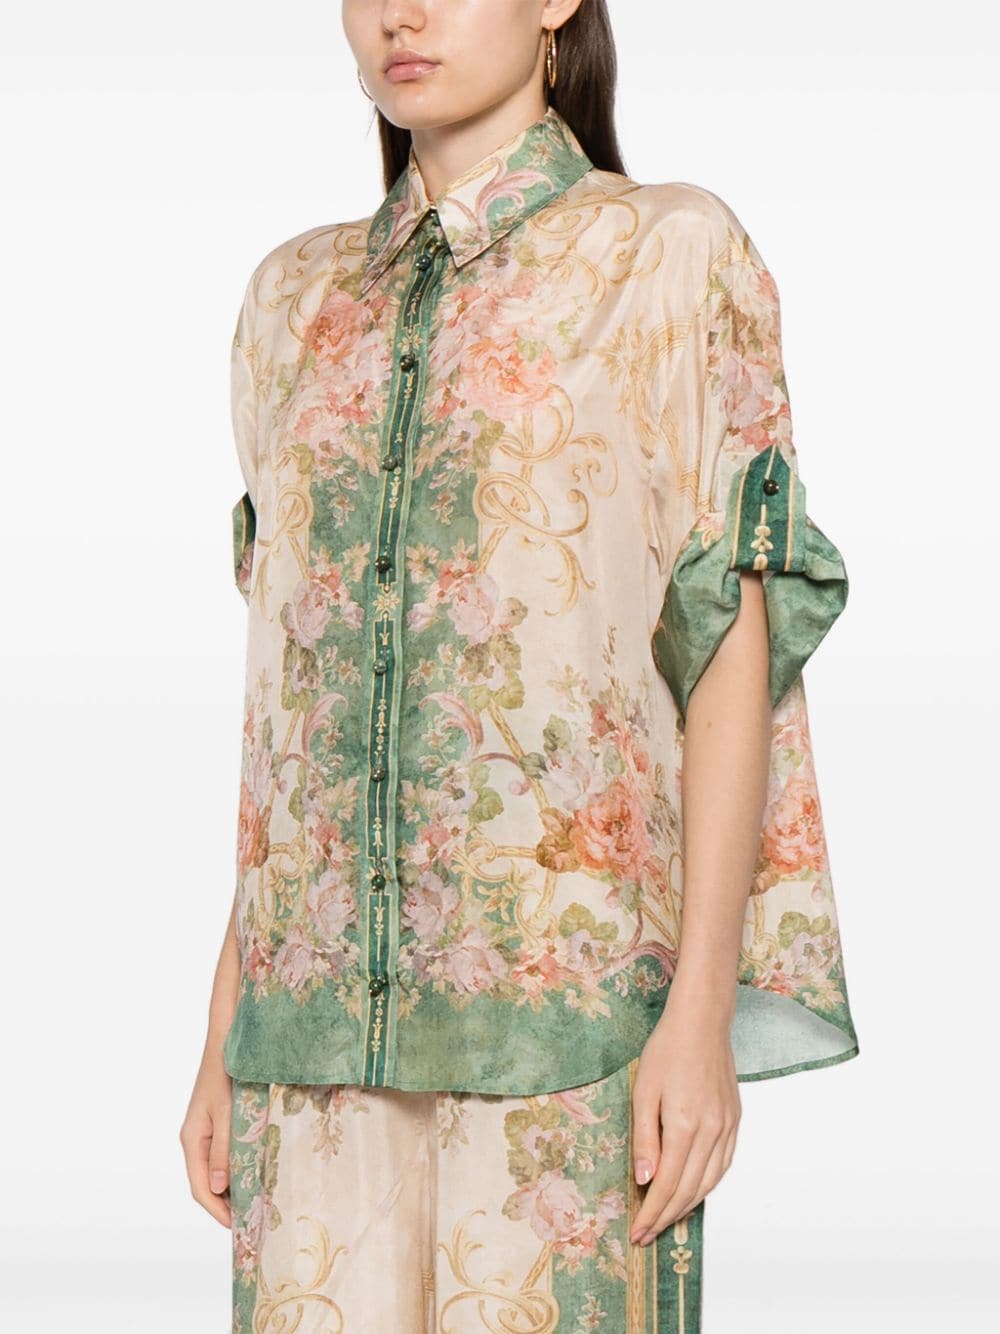 Flowered shirt